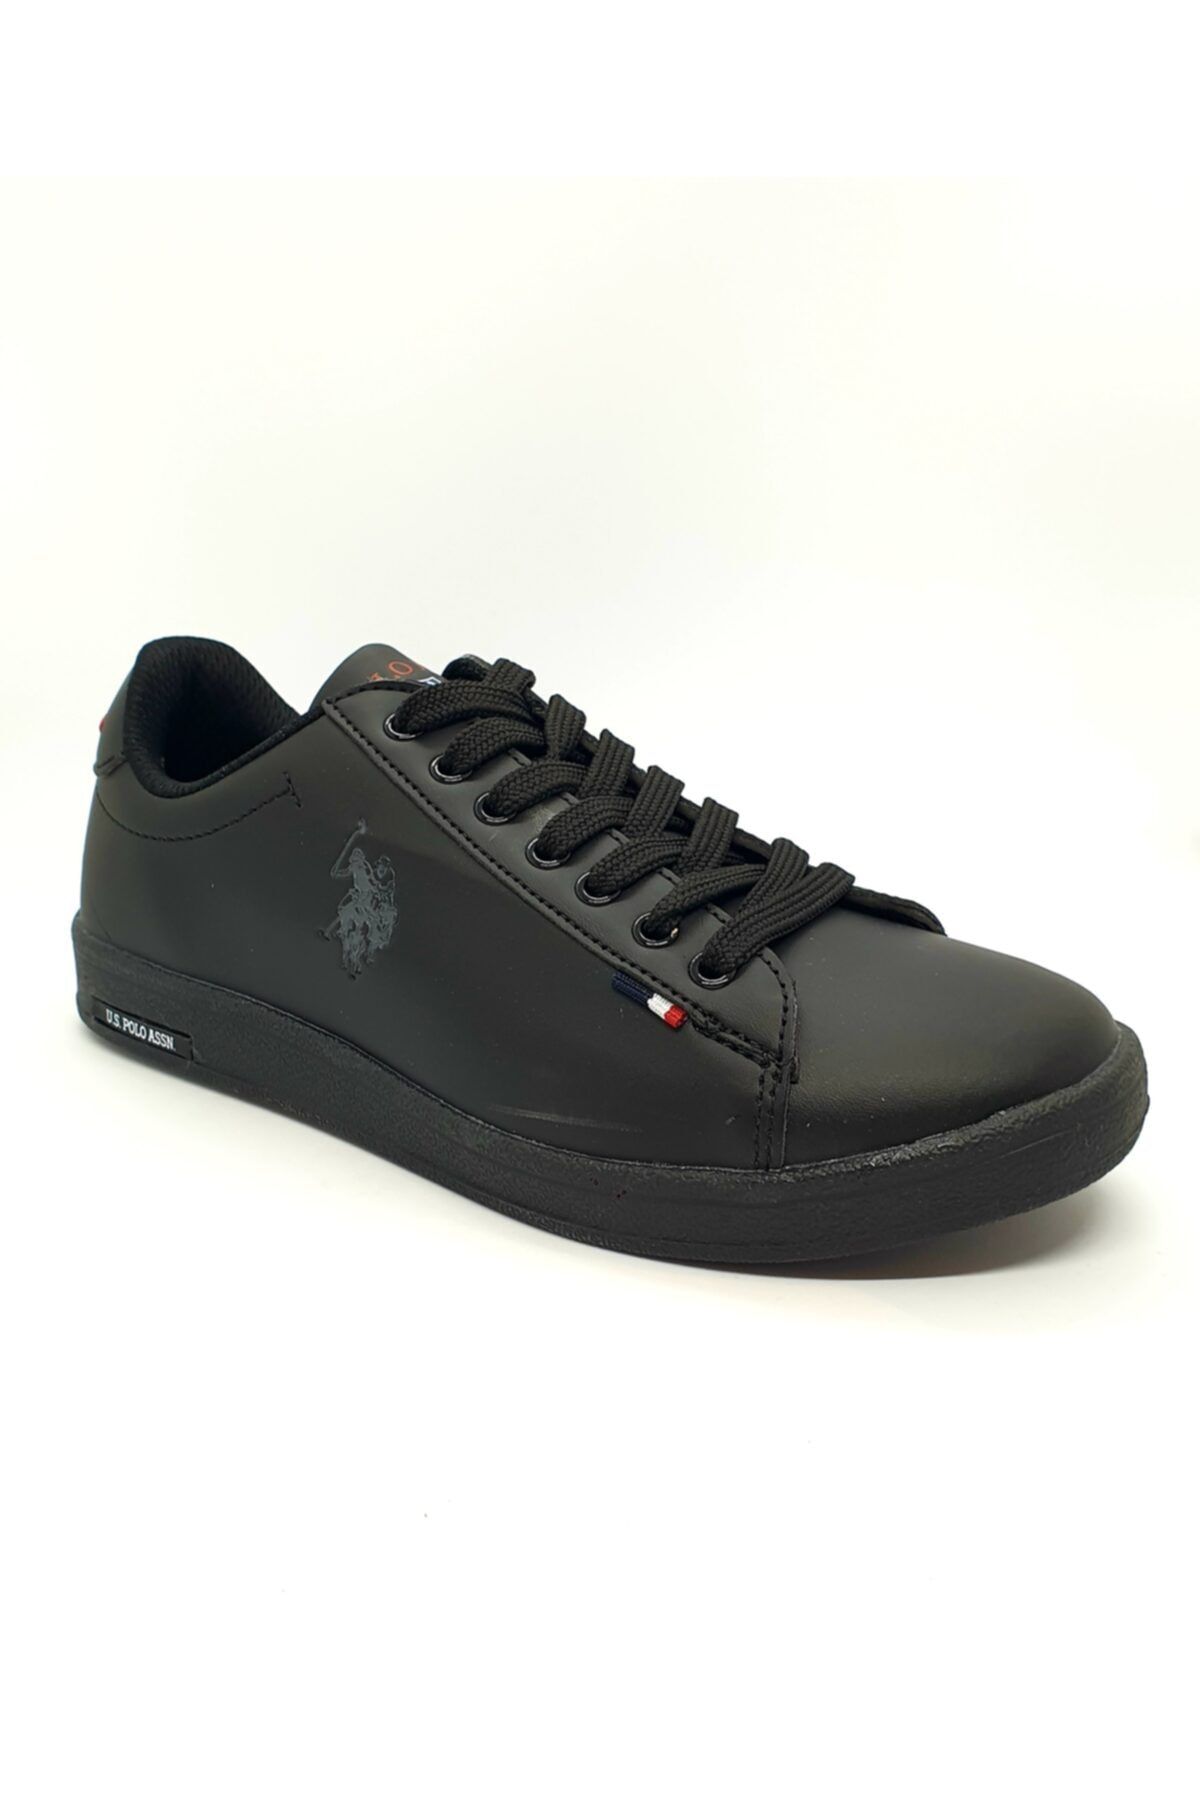 U.S. Polo Assn. Unisex Siyah Bağcıklı Sneaker Ayakkabı